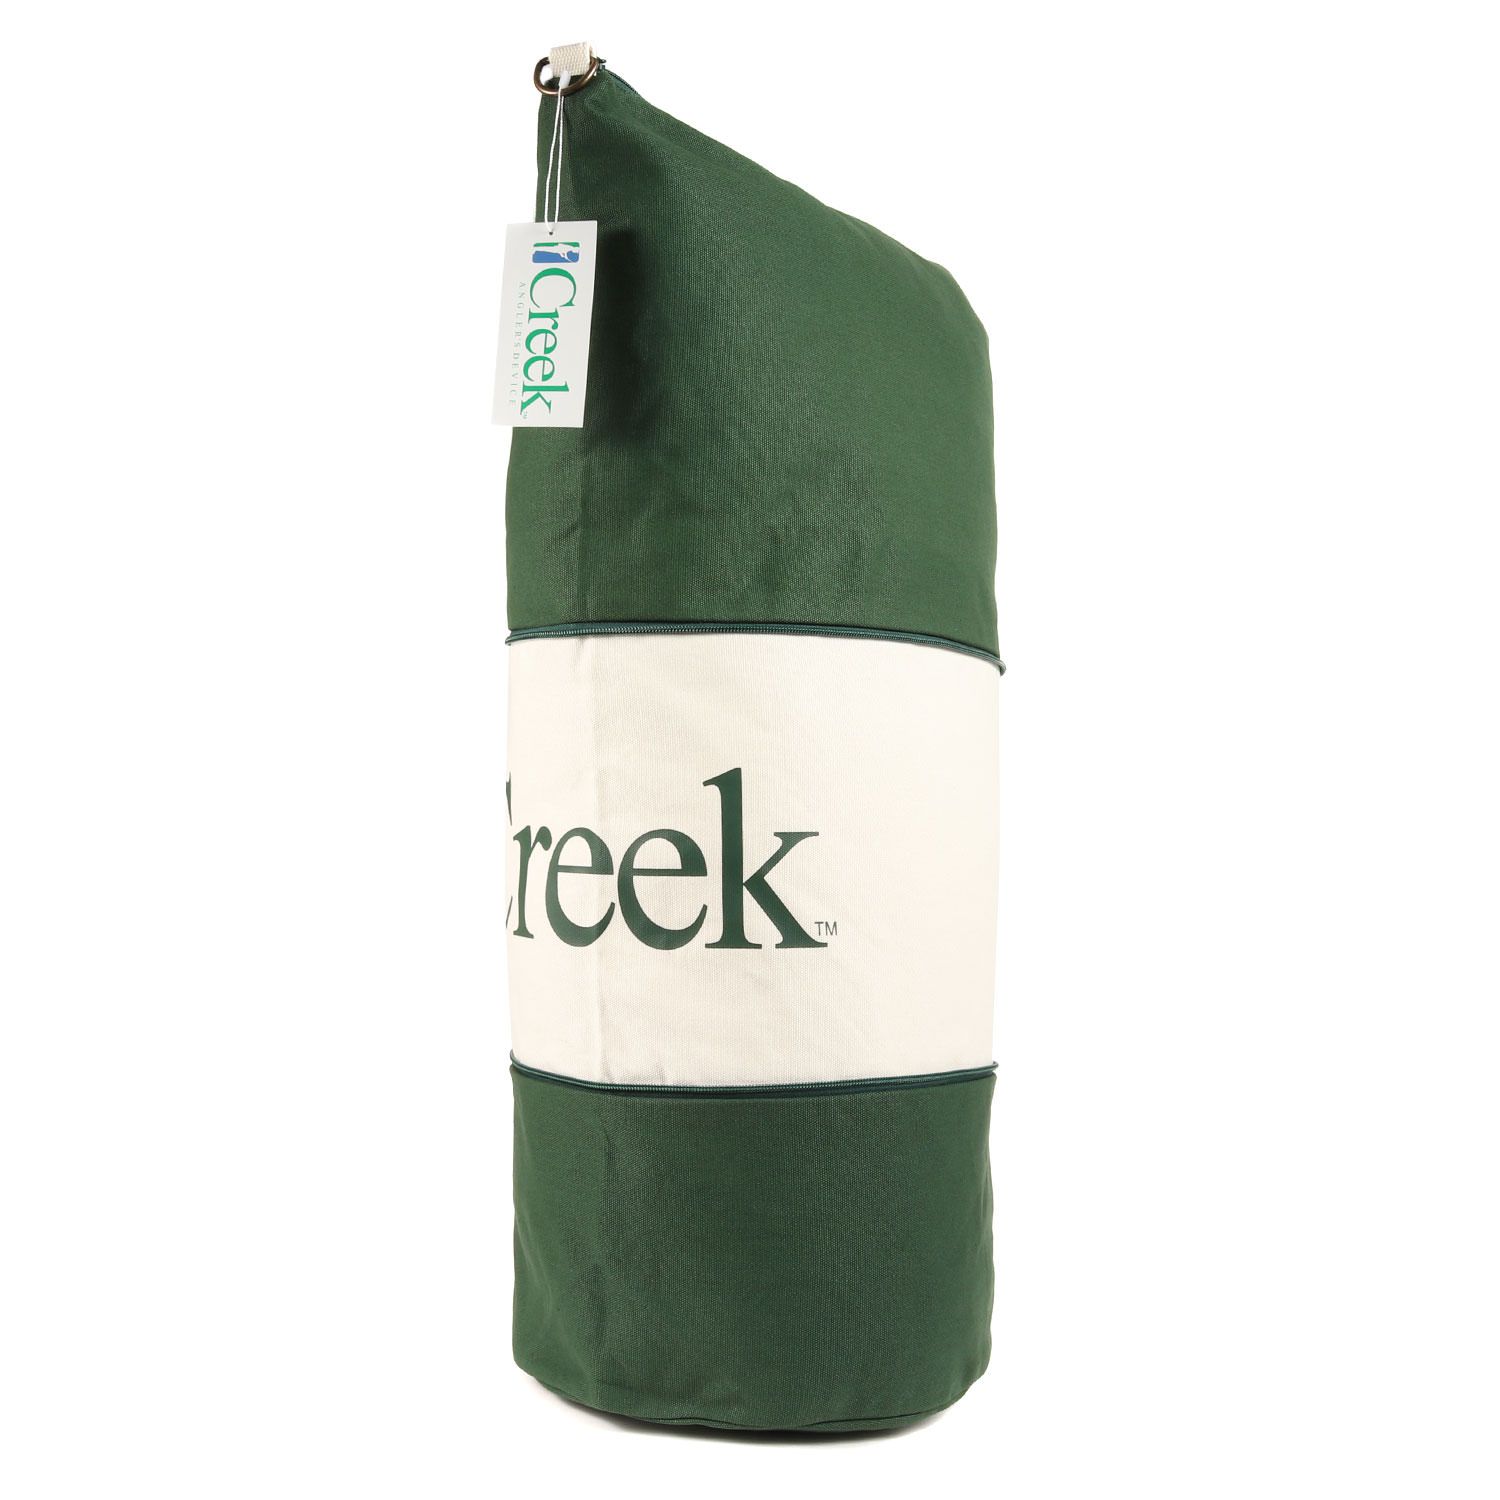 Creek Angler's Device  2way shoulder bag